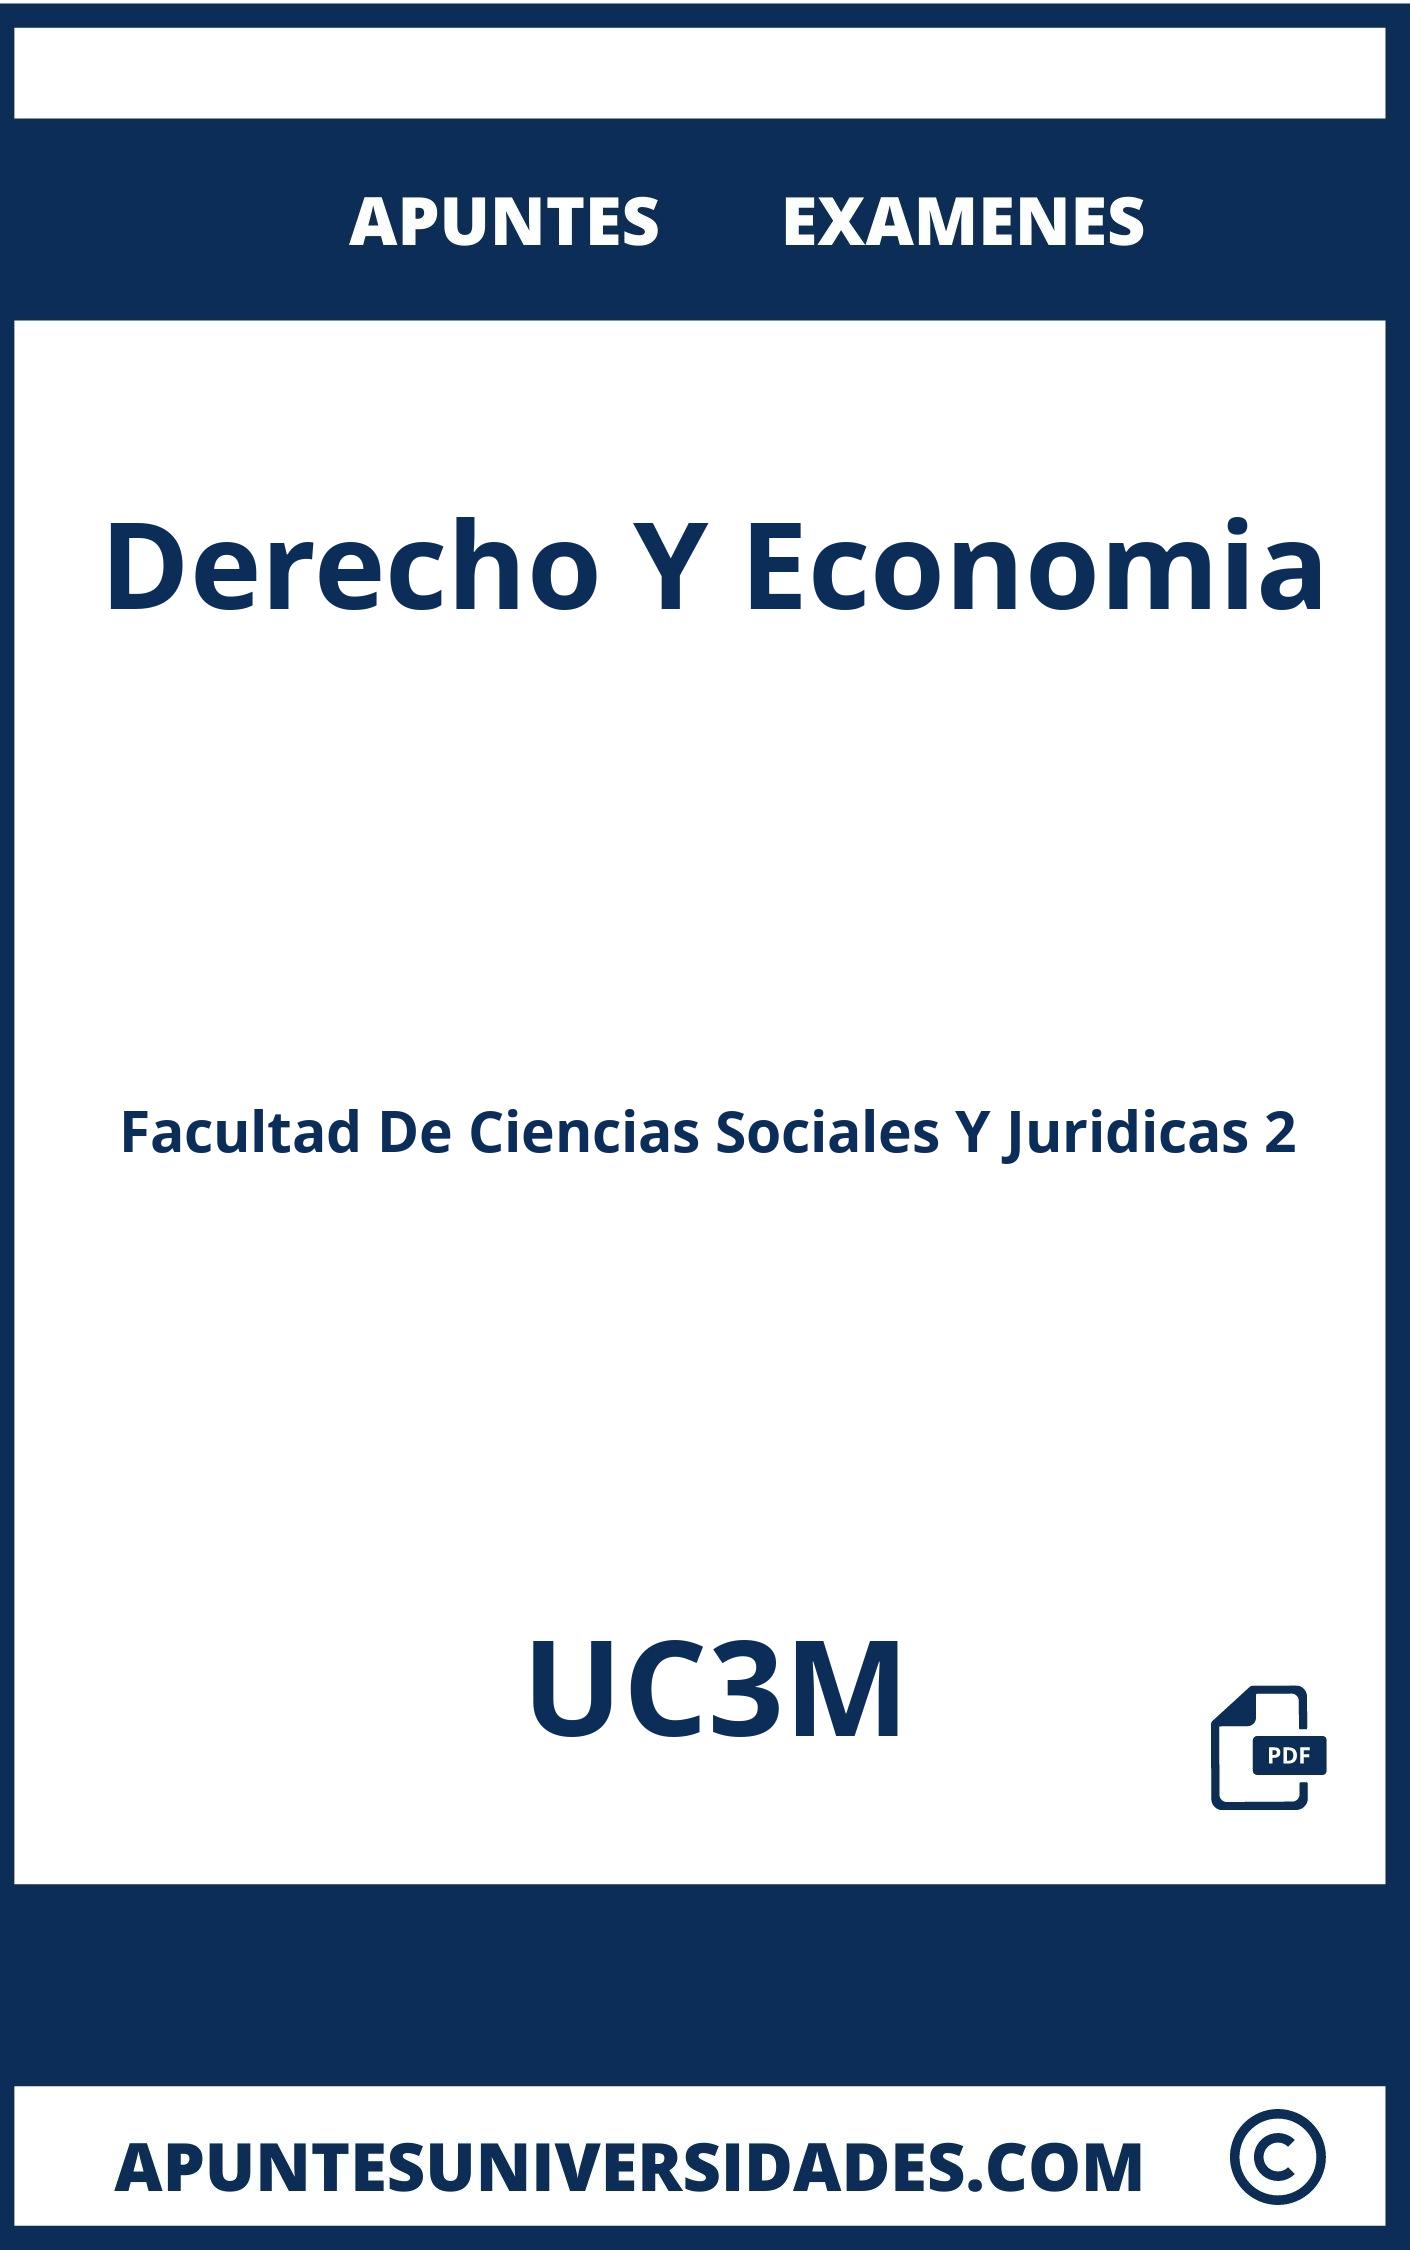 Apuntes Derecho Y Economia UC3M y Examenes